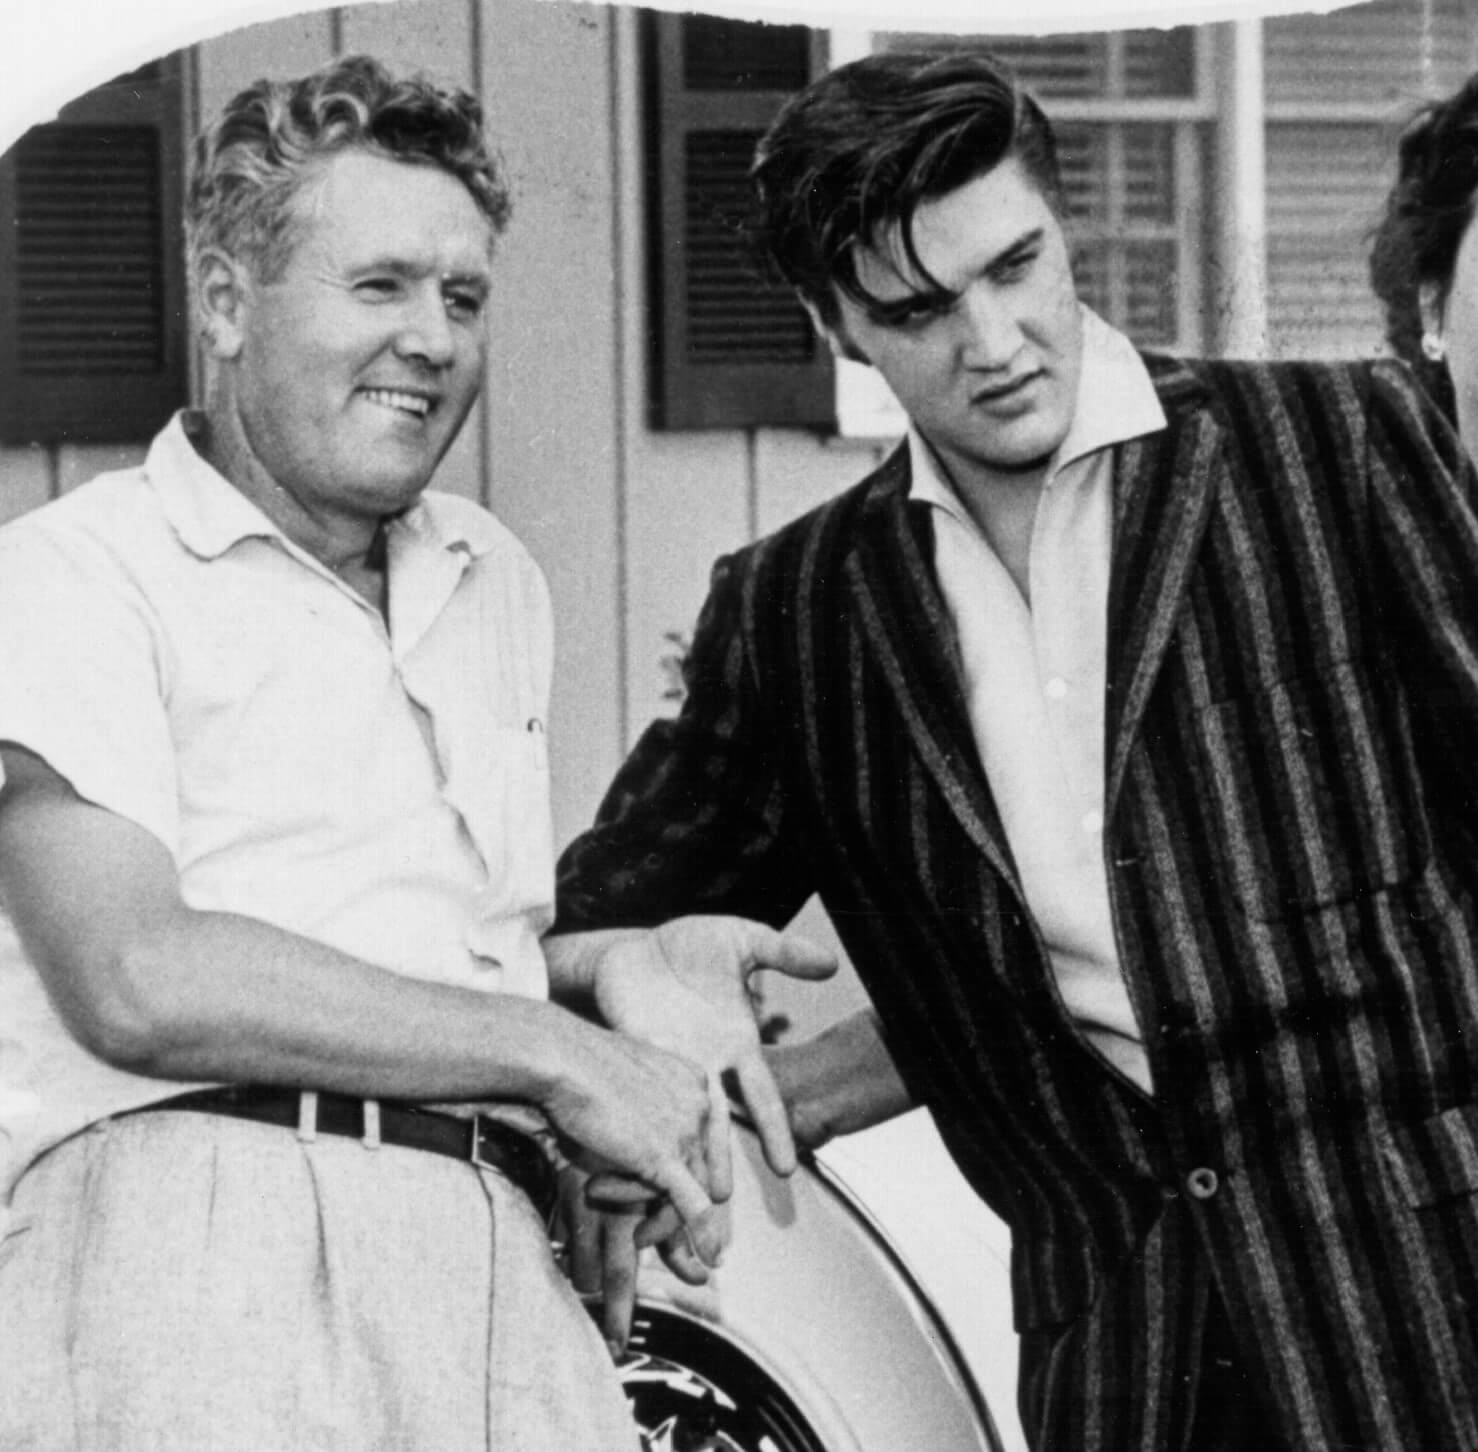 Elvis Presley with his dad, Vernon Presley